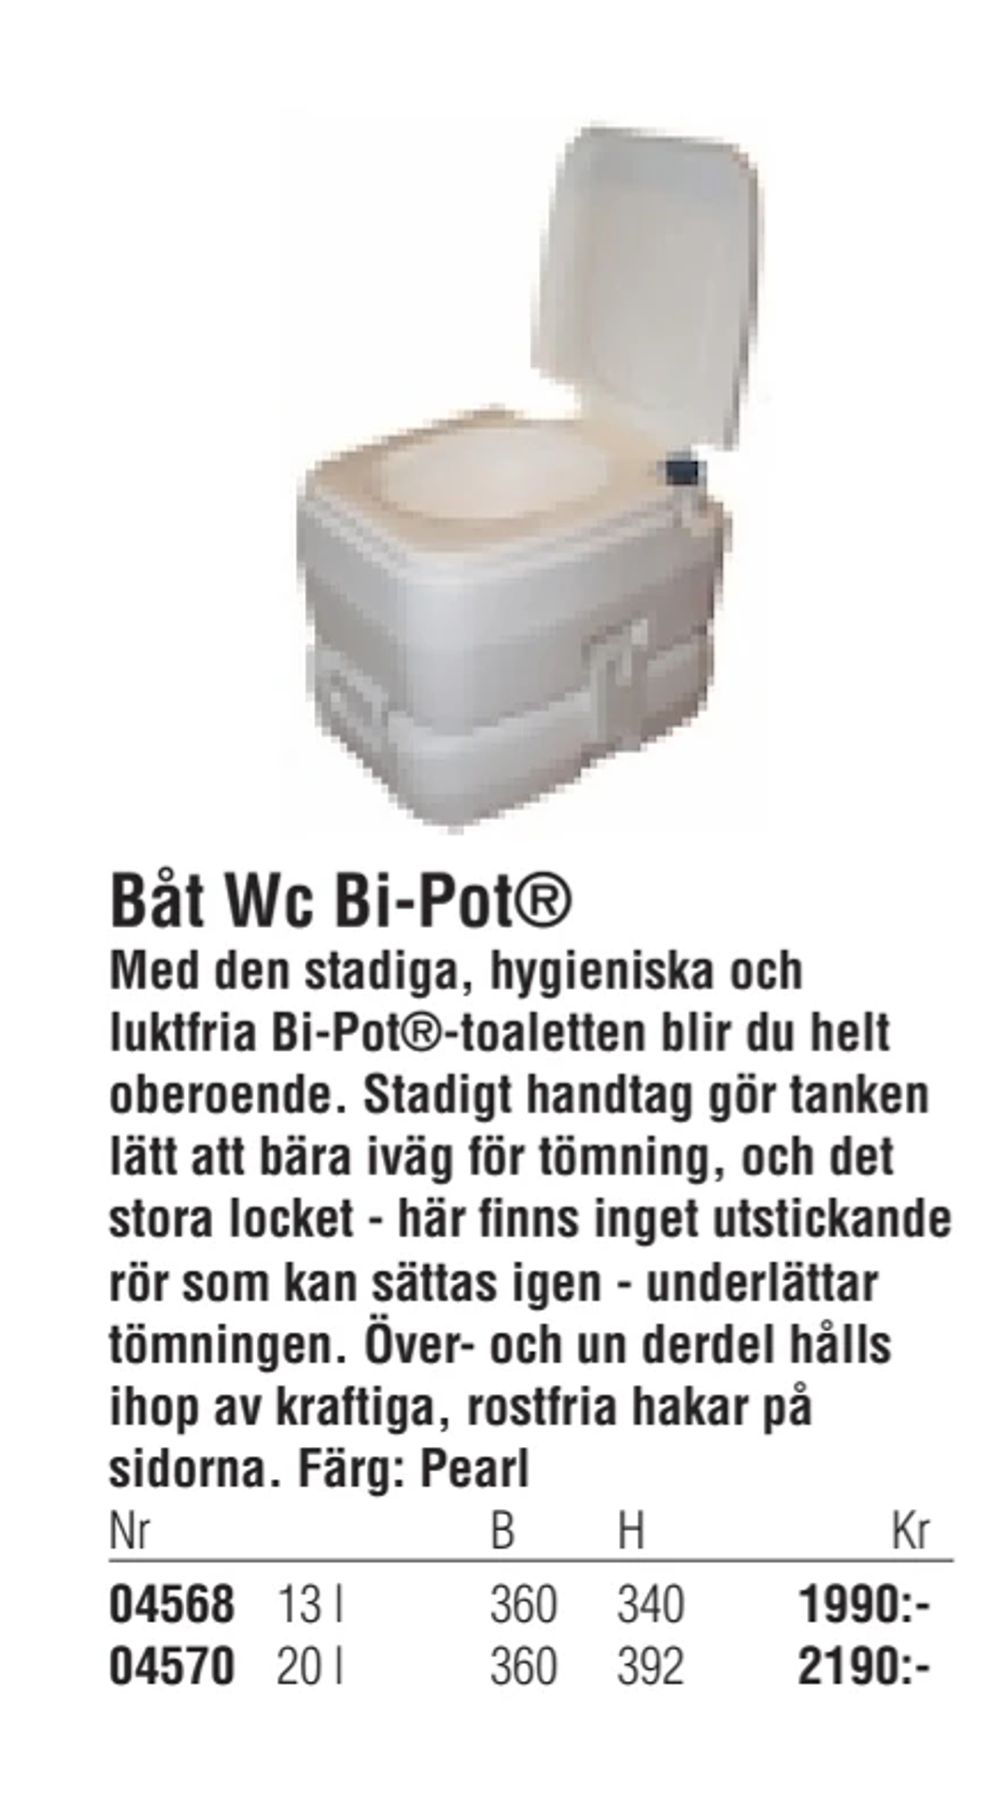 Erbjudanden på Båt Wc Bi-Pot® från Erlandsons Brygga för 1 990 kr